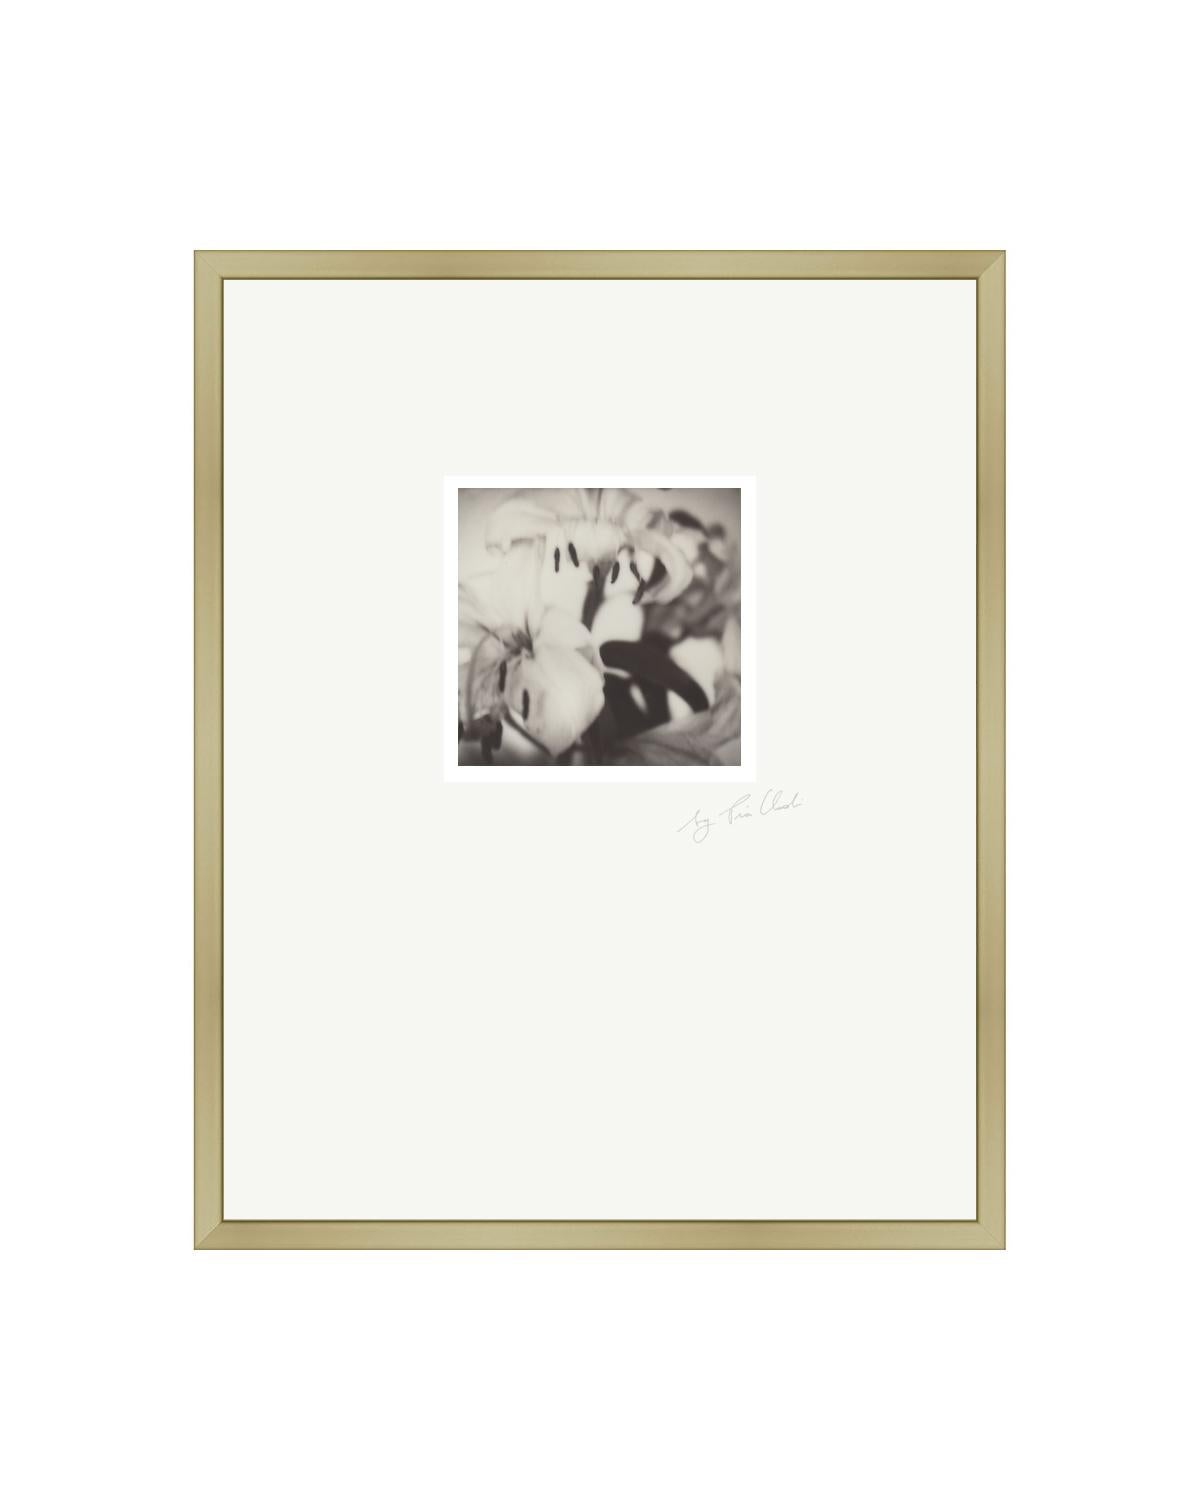 Landscape Photograph Pia Clodi - Past Bloom II - Photographie Polaroid contemporaine noire et blanche originale encadrée